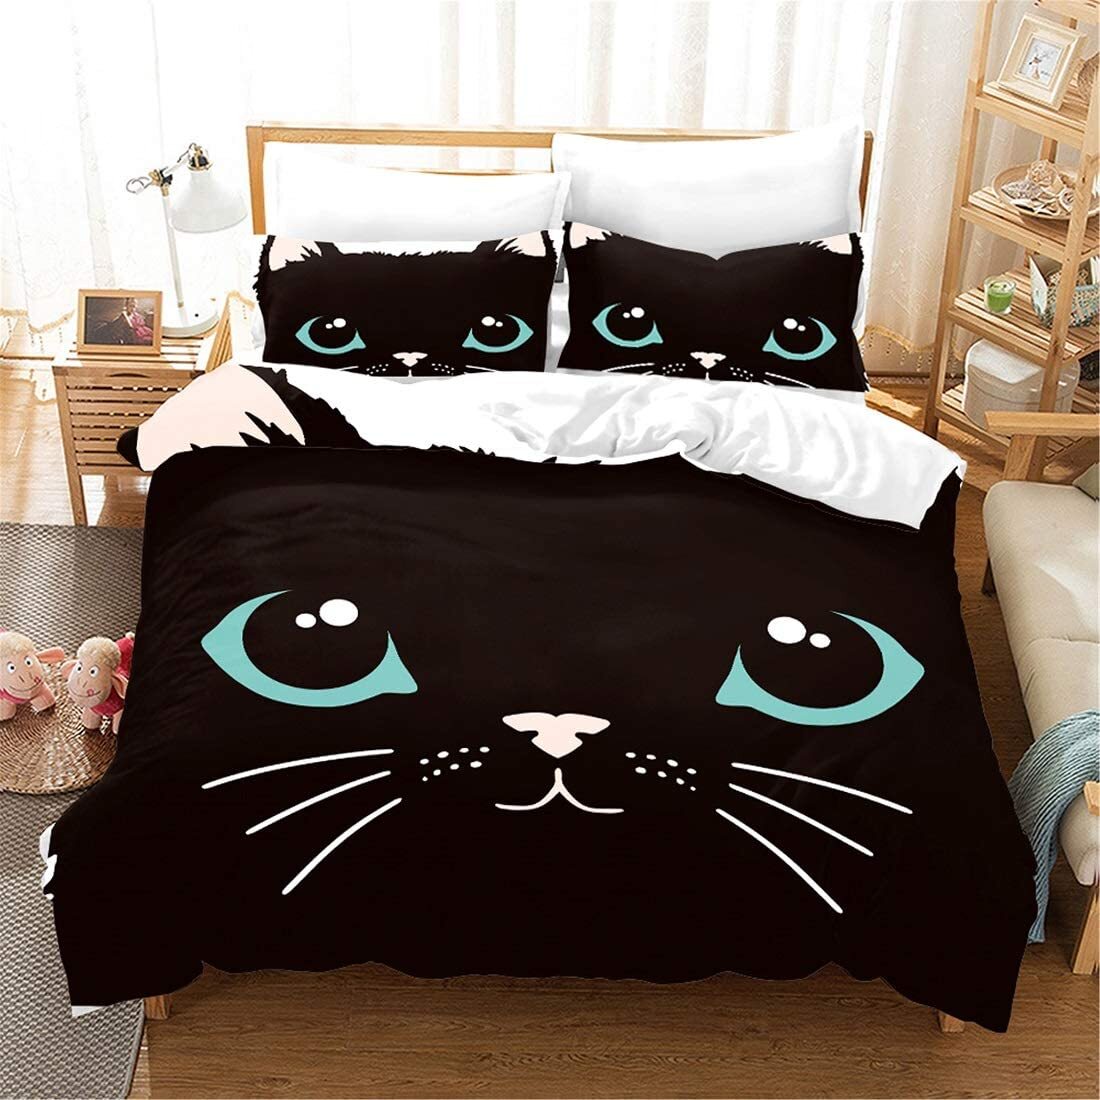 кровать кошка для девочки